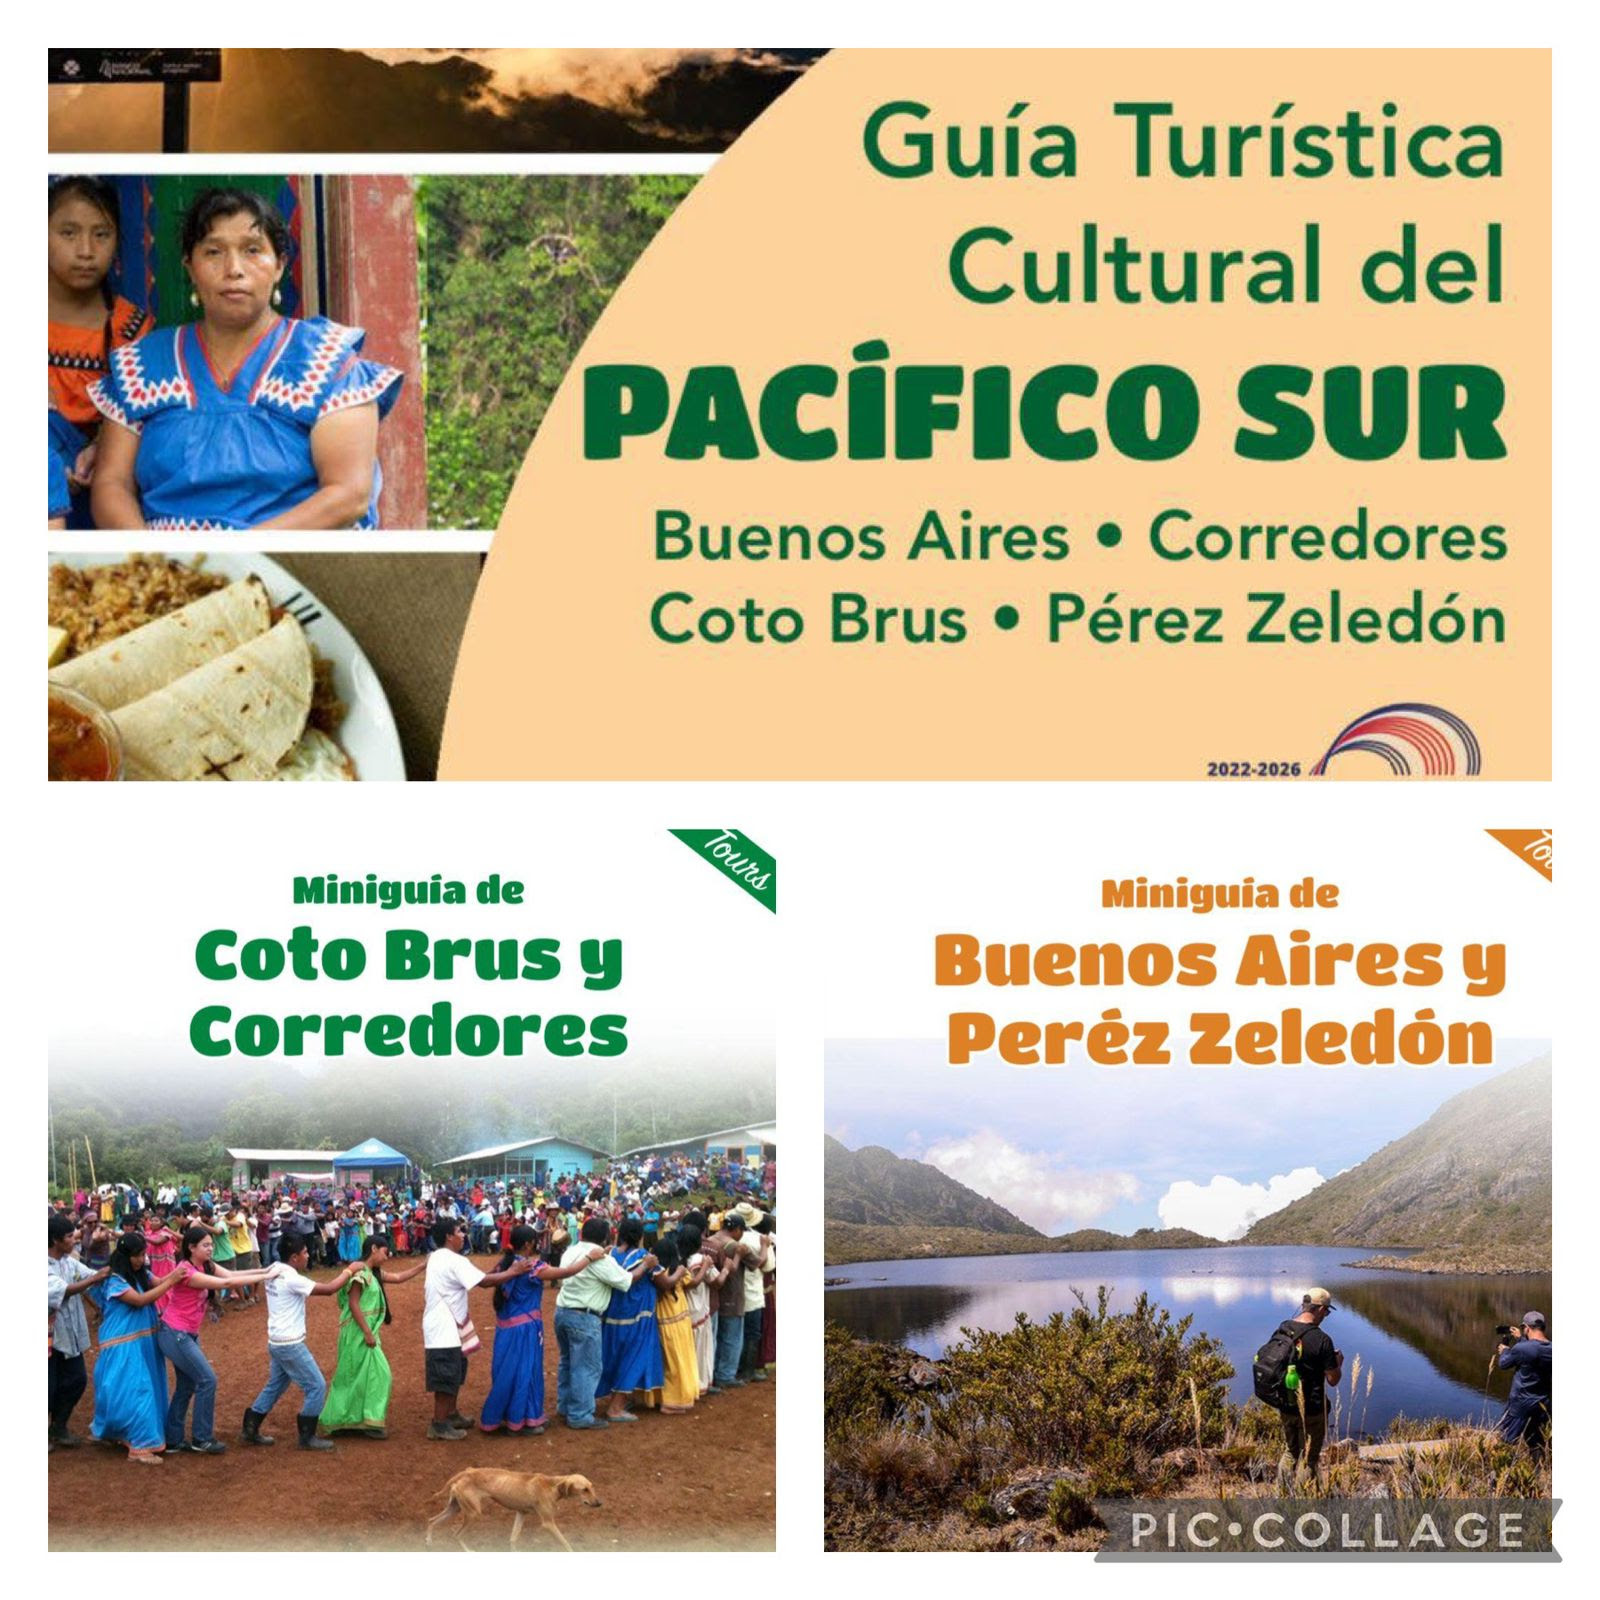 ICT entrega Guías Turístico-Culturales de la Región Brunca en español e inglés